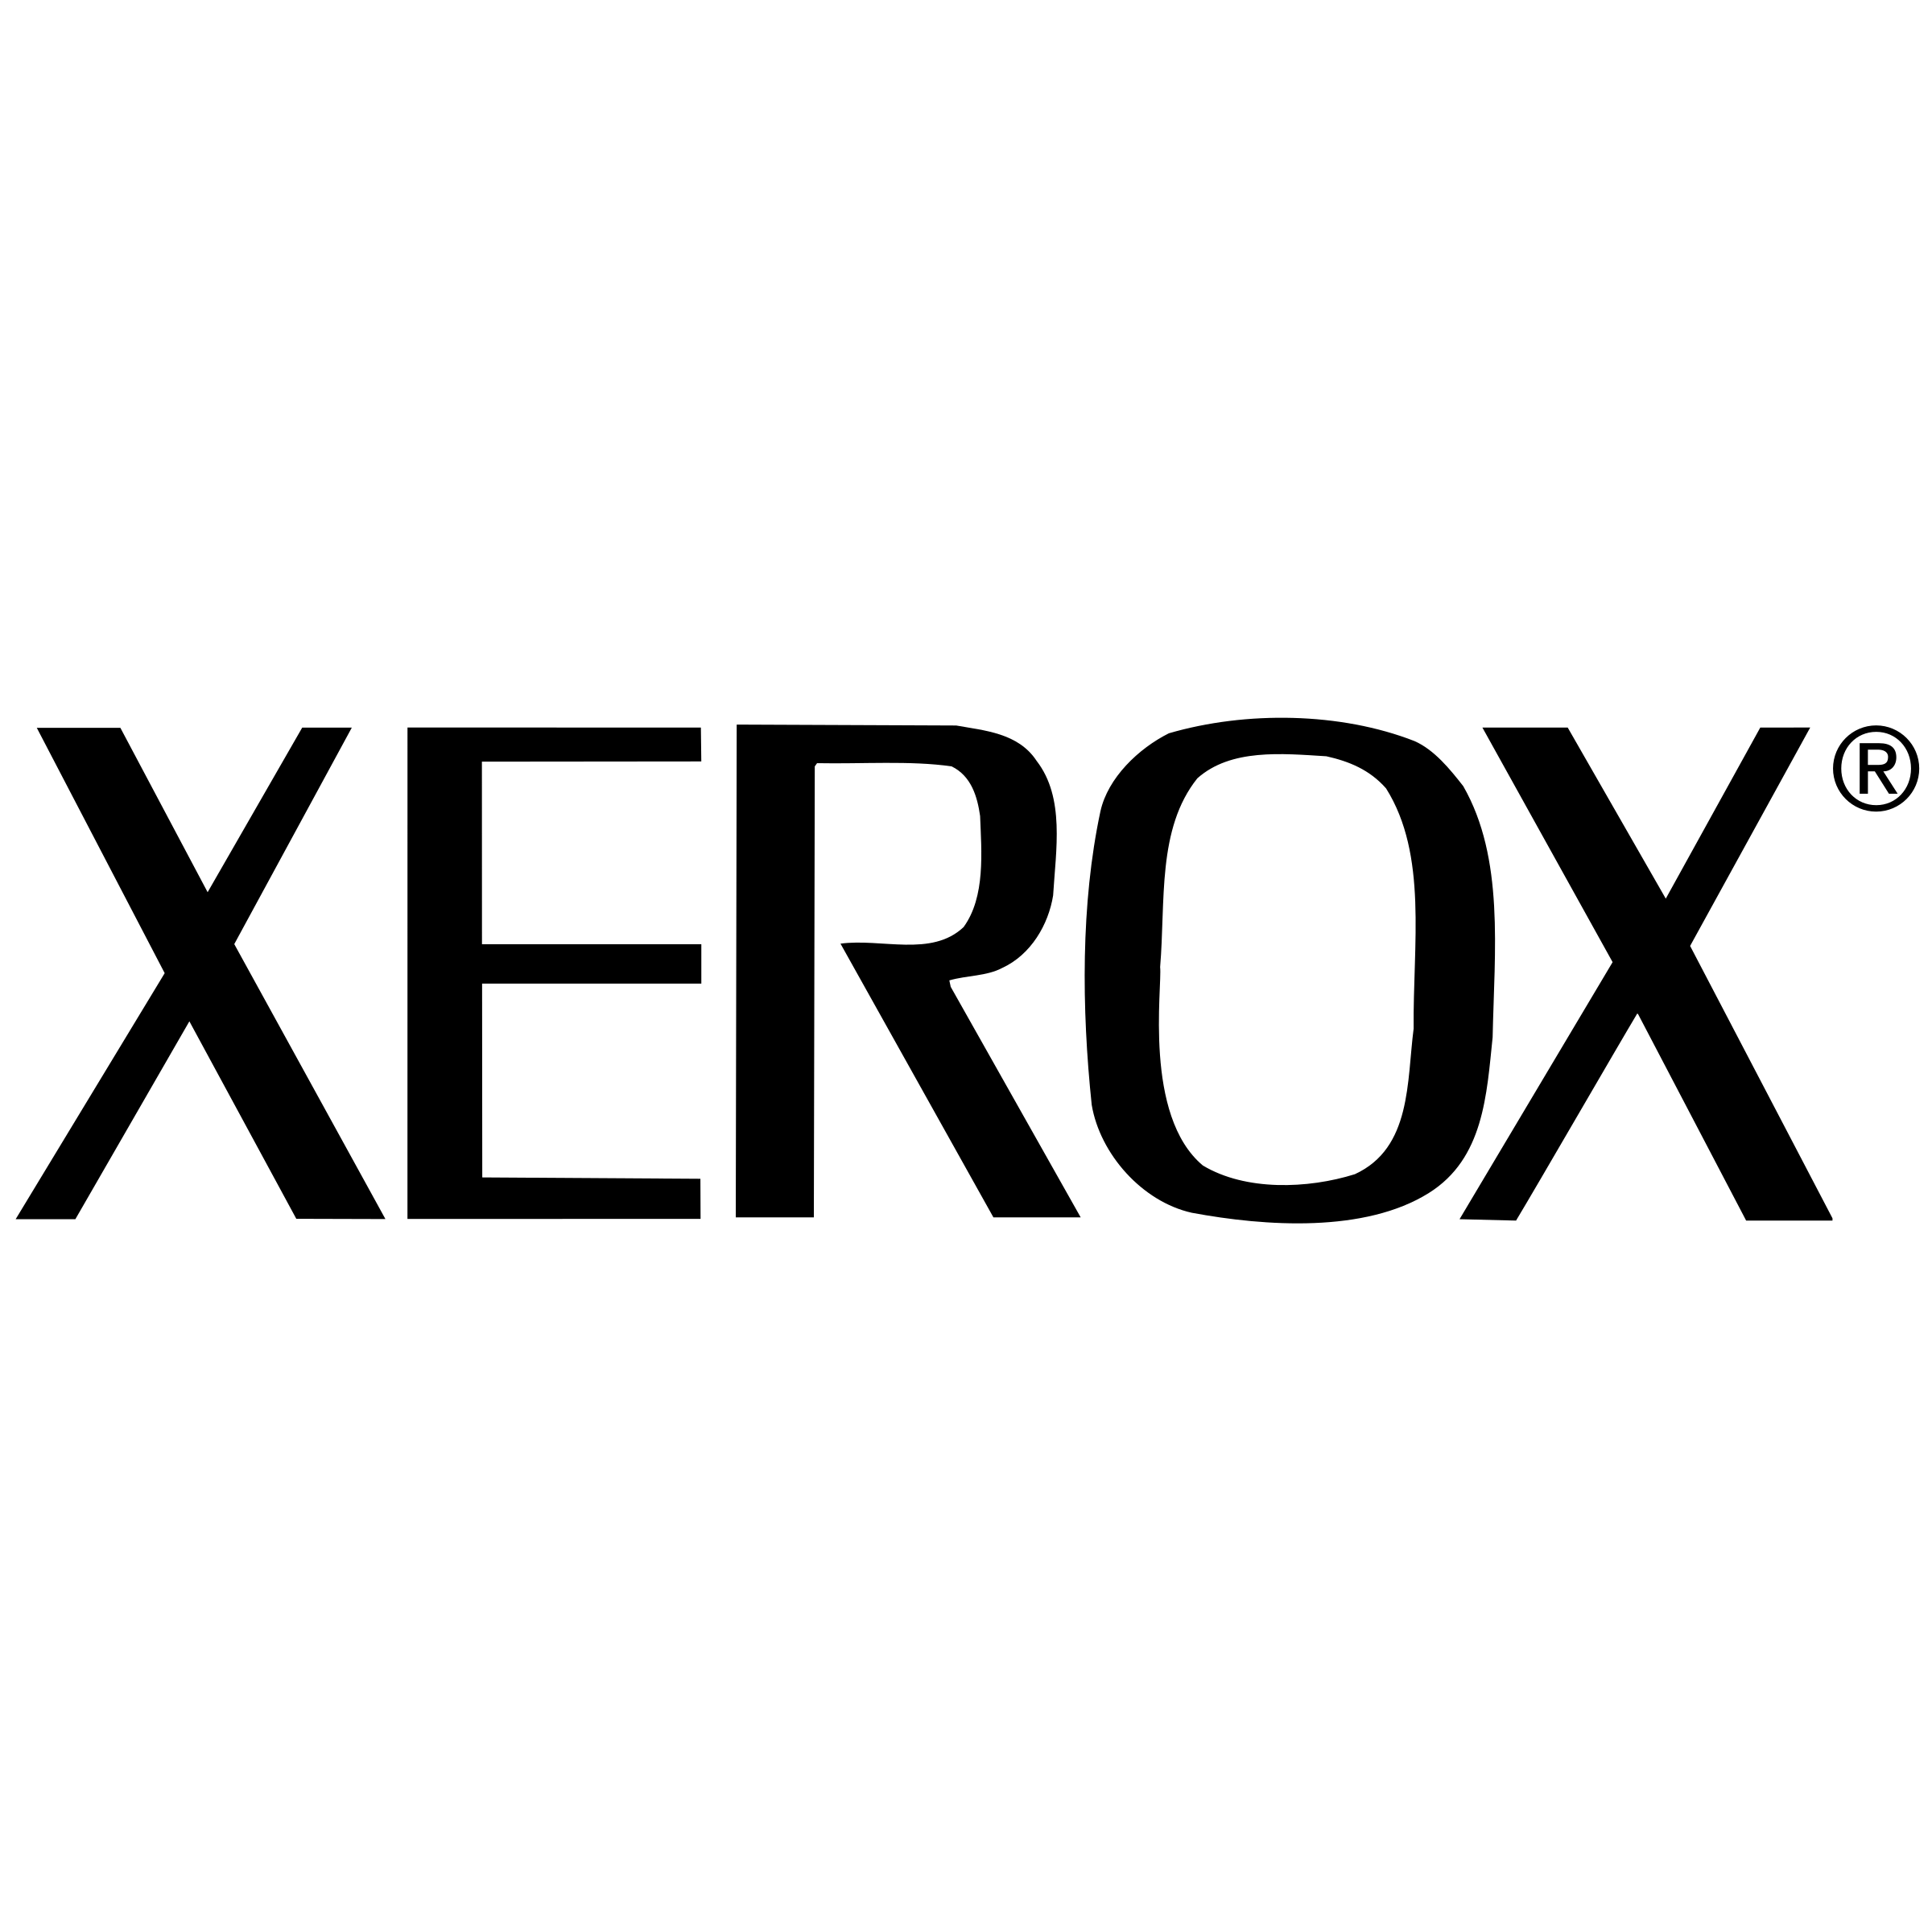 xerox-9-logo-black-and-white